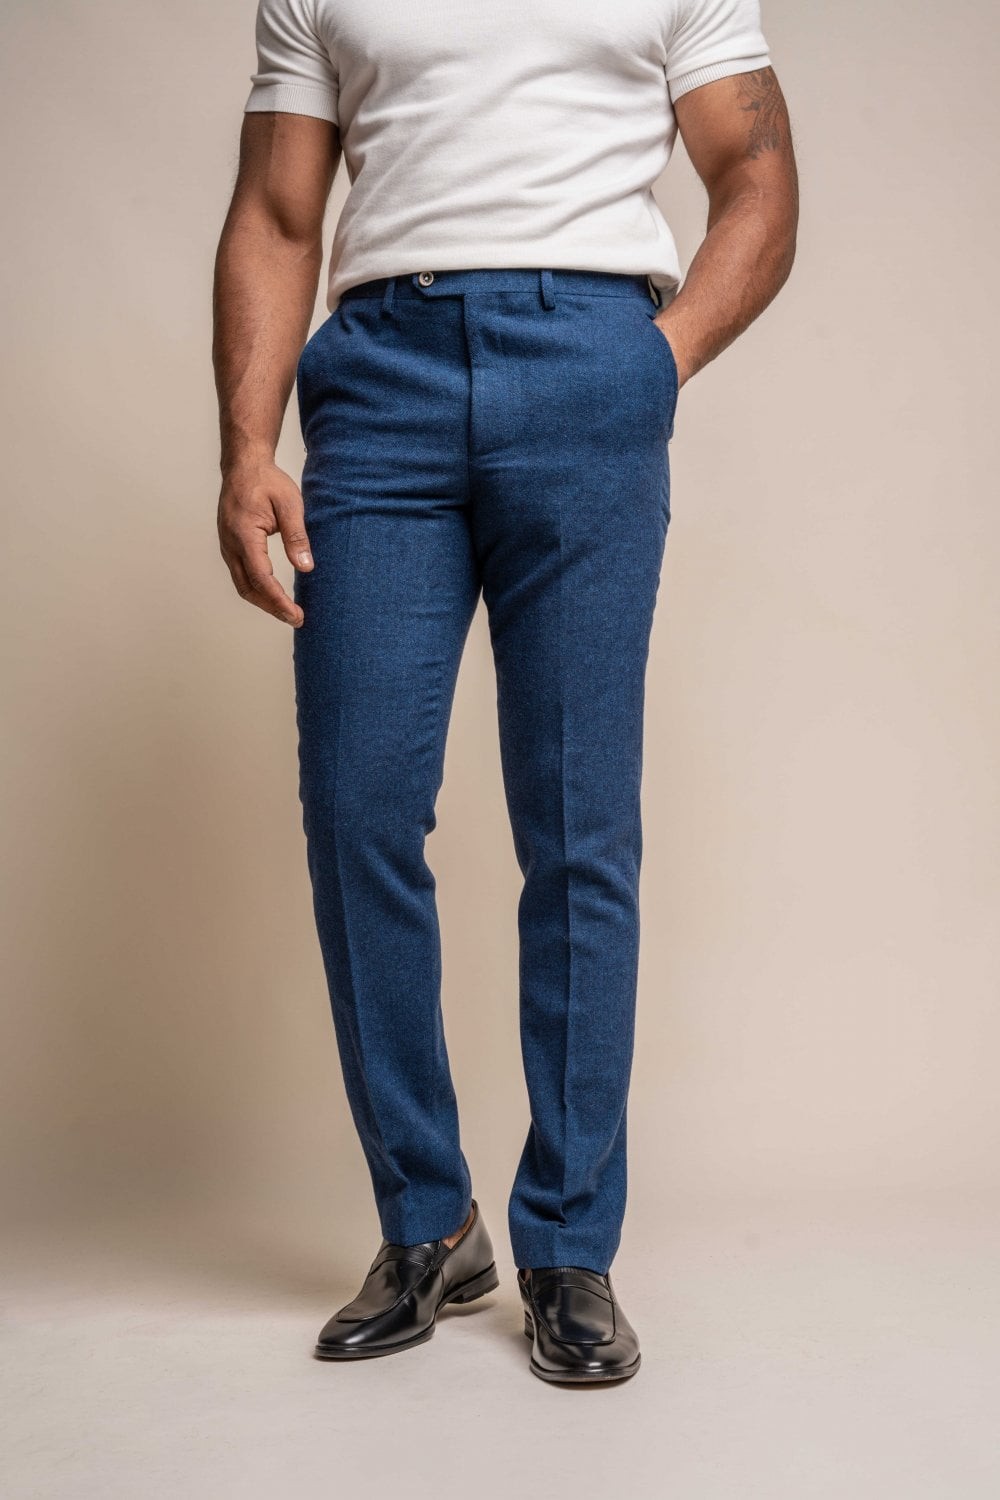 Men's Tweed Wool Slim Fit Formal Blue Pants - ORSON